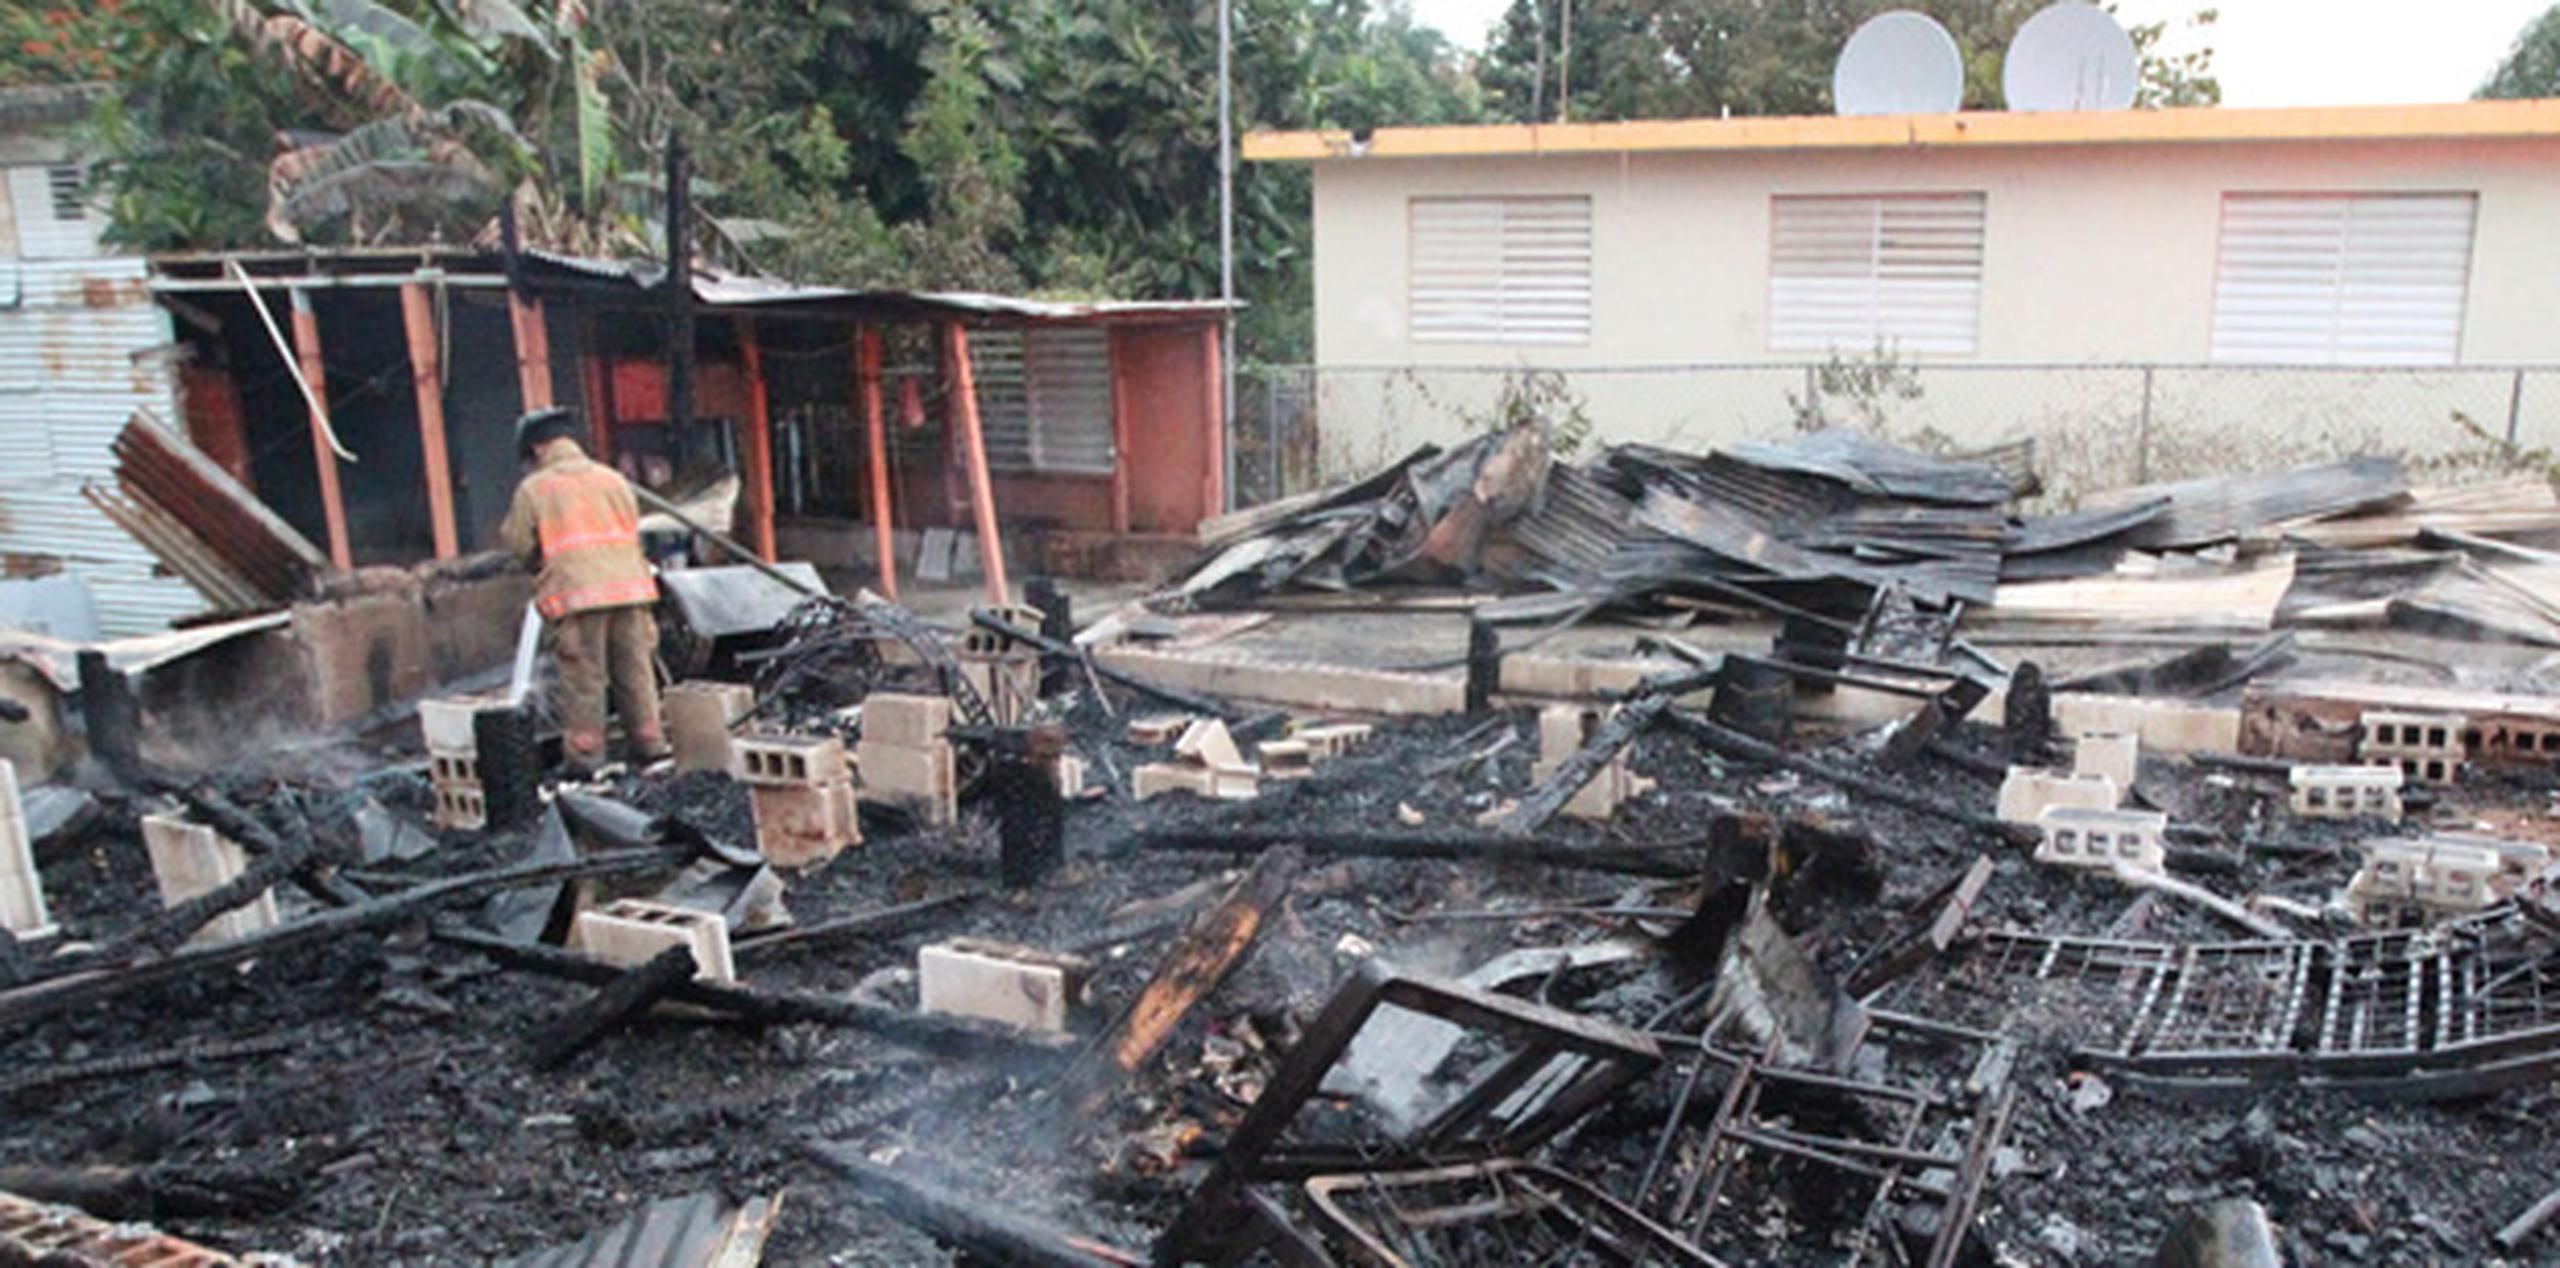 El alcalde de este pueblo, Aníbal Vega Borges, relató que la vivienda quemada era de madera y estaba en malas condiciones. (alex.figueroa@gfrmedia.com)